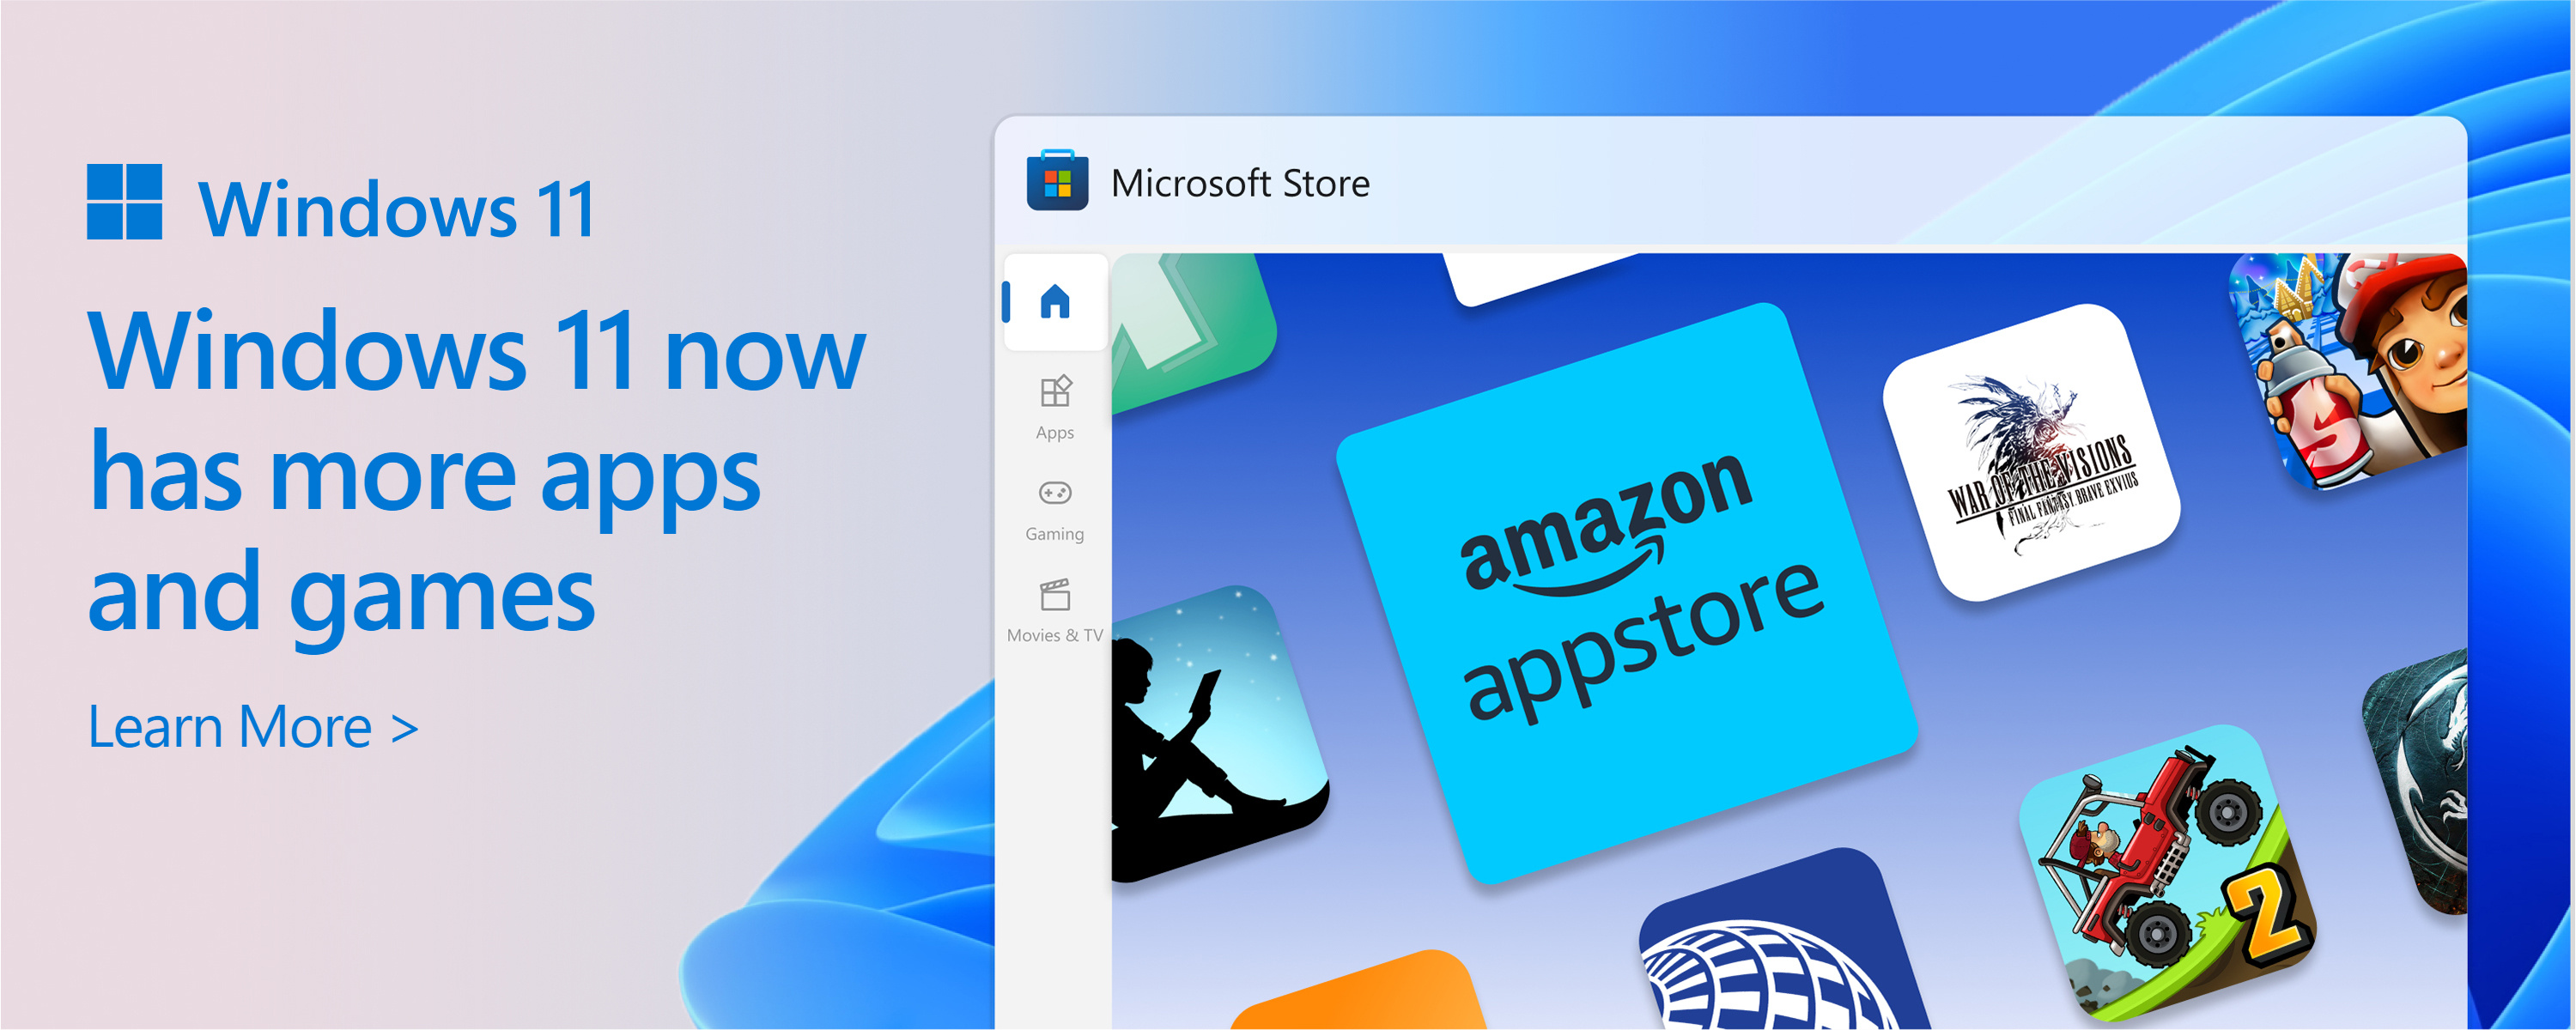 Näyttökuva Microsoft Storesta, jossa on teksti: Microsoft Storen luettelo kasvaa. Windows 11 antaa lisää haluamistasi ja tarvitsemistasi sovelluksista ja peleistä.